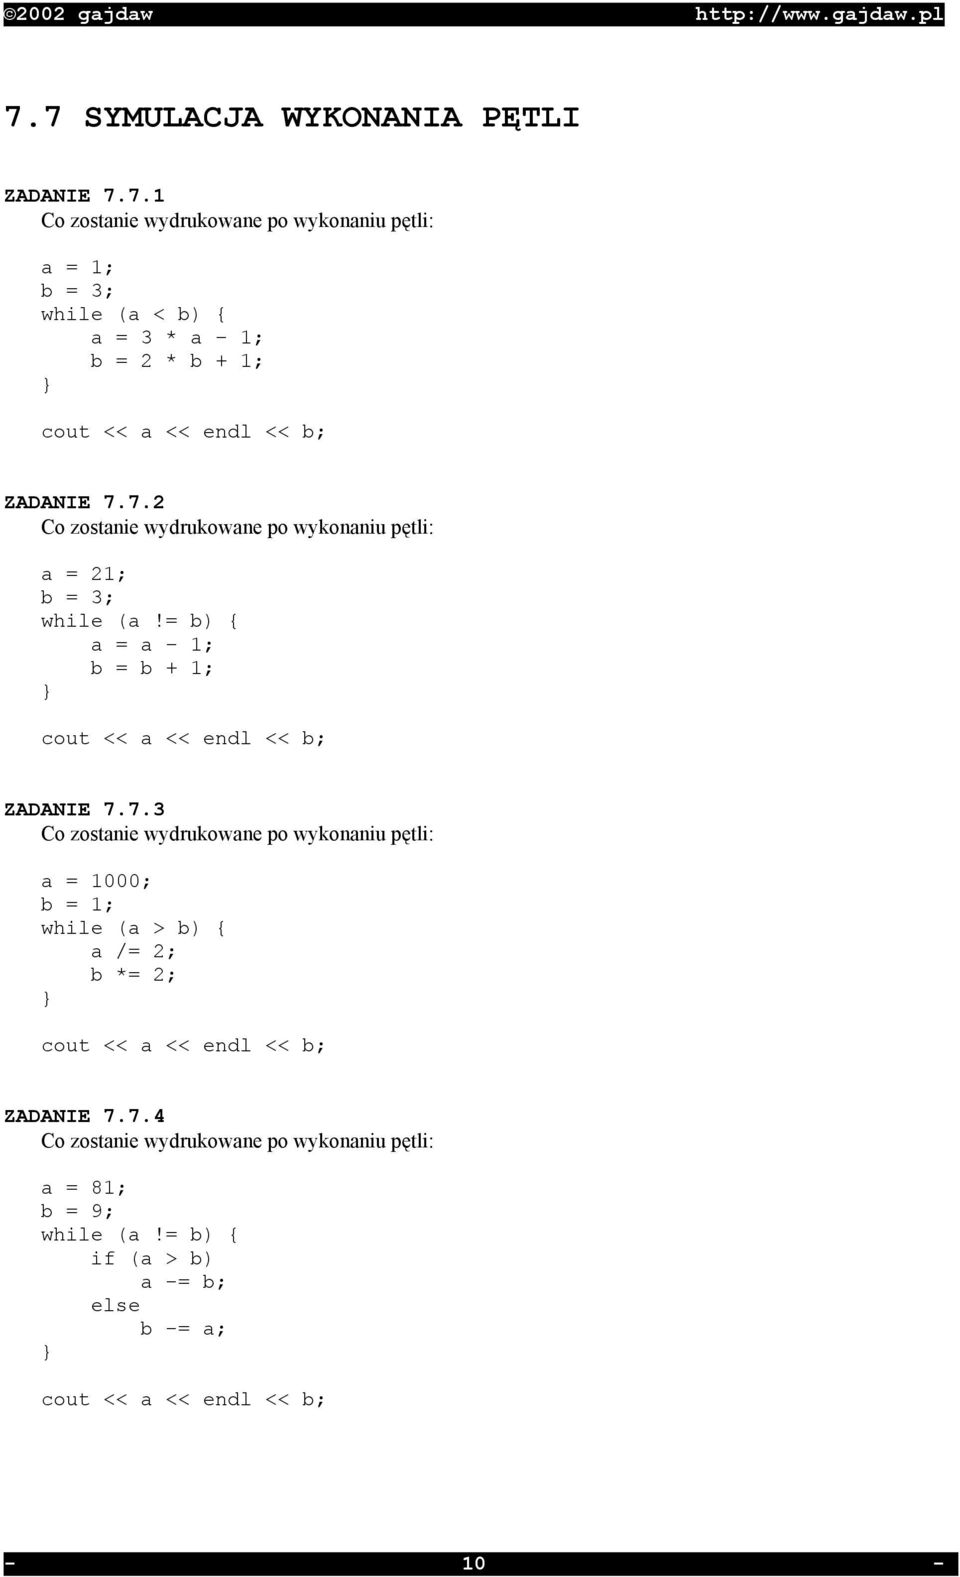 7.4 Co zostanie wydrukowane po wykonaniu pętli: a = 81; b = 9; while (a!= b) { if (a > b) a -= b; else b -= a; } cout << a << endl << b; - 10 -